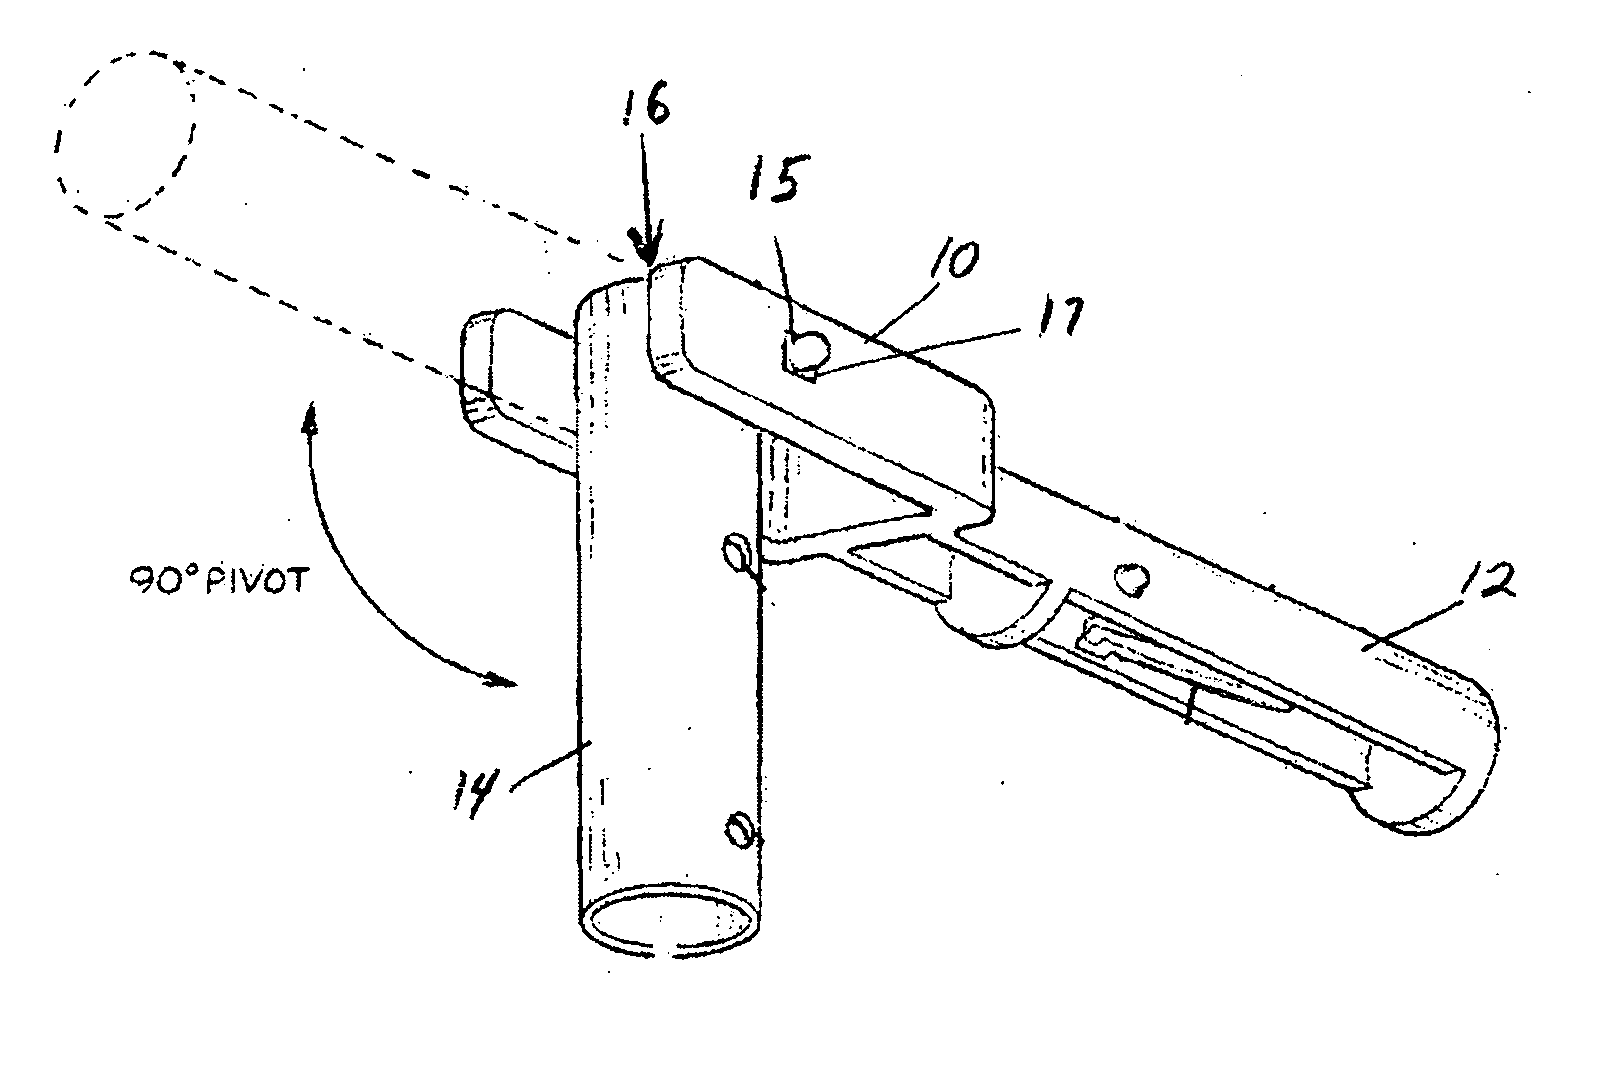 Locking hinge connector apparatus